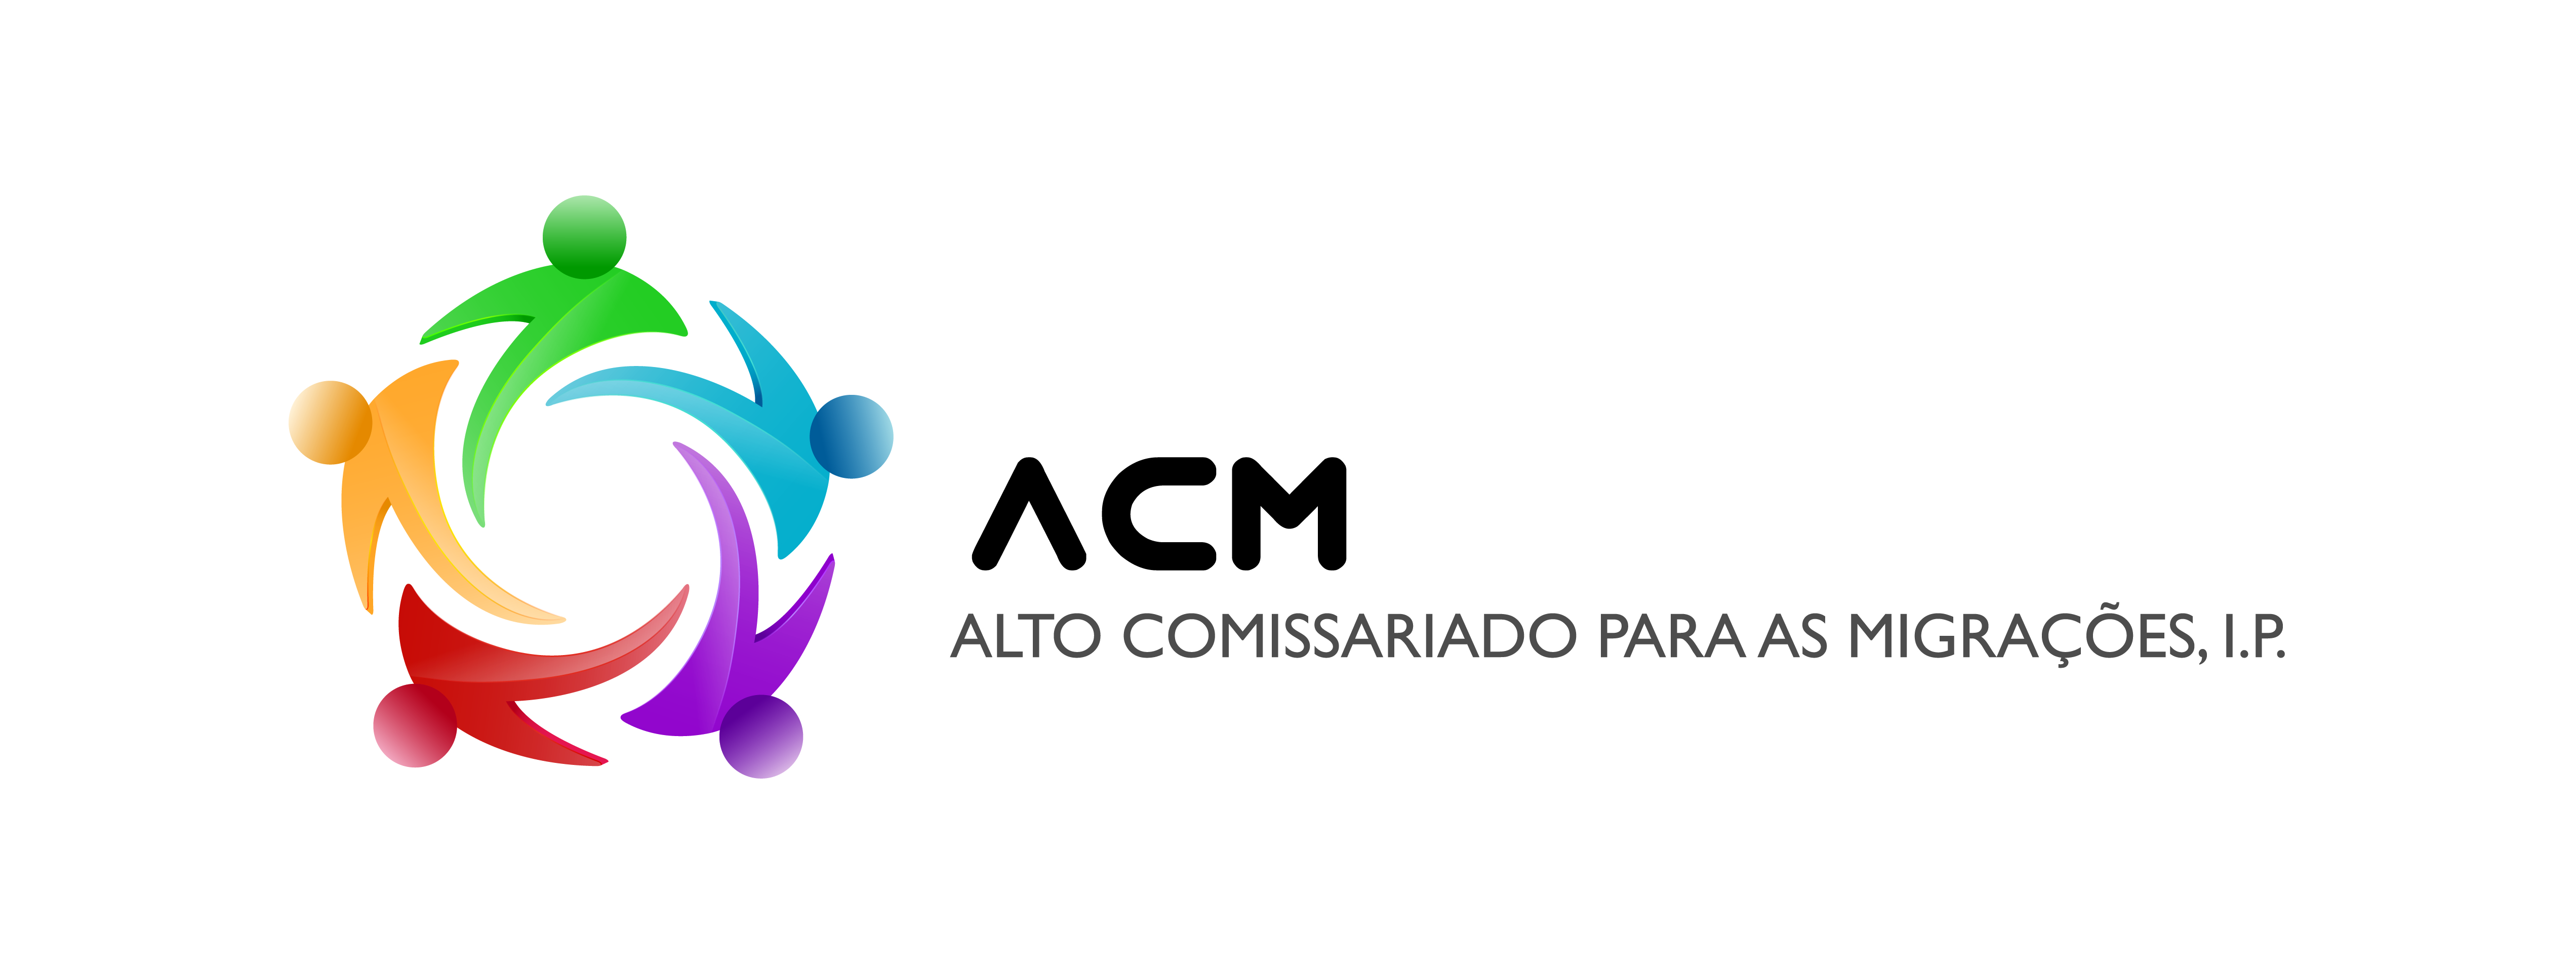 ACM_logo -02